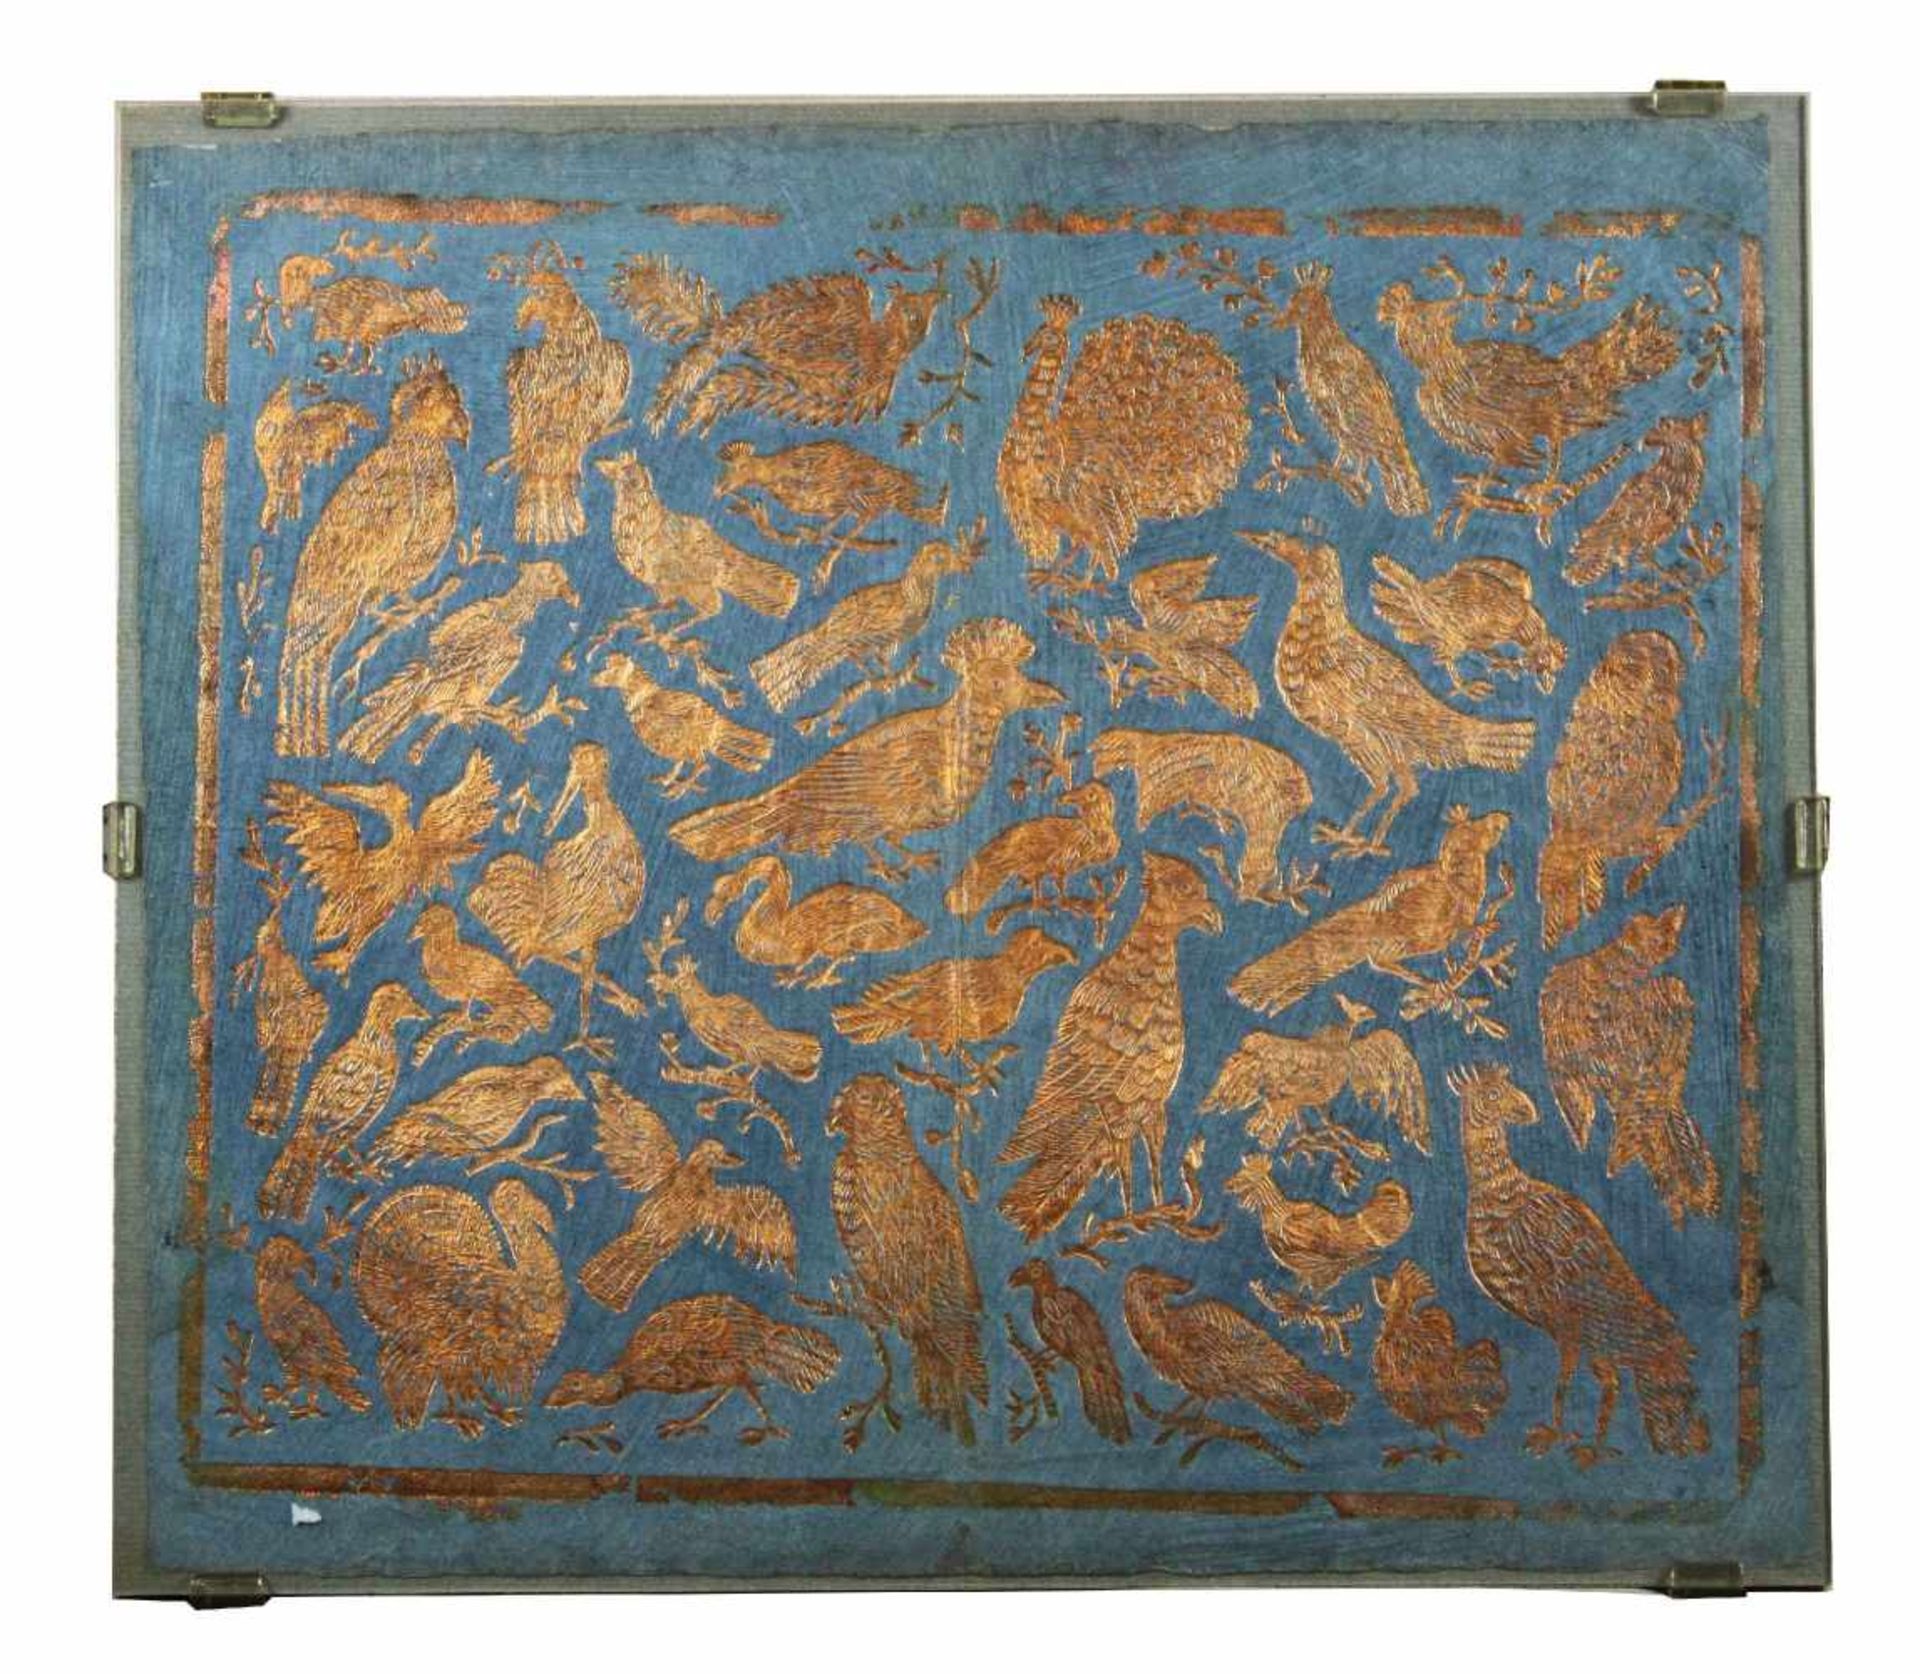 Prägedruck, Gold auf blauem Brokatpapier mit goldenen Vögeln, ca. 18 Jh., Augsburg, verschiedenste